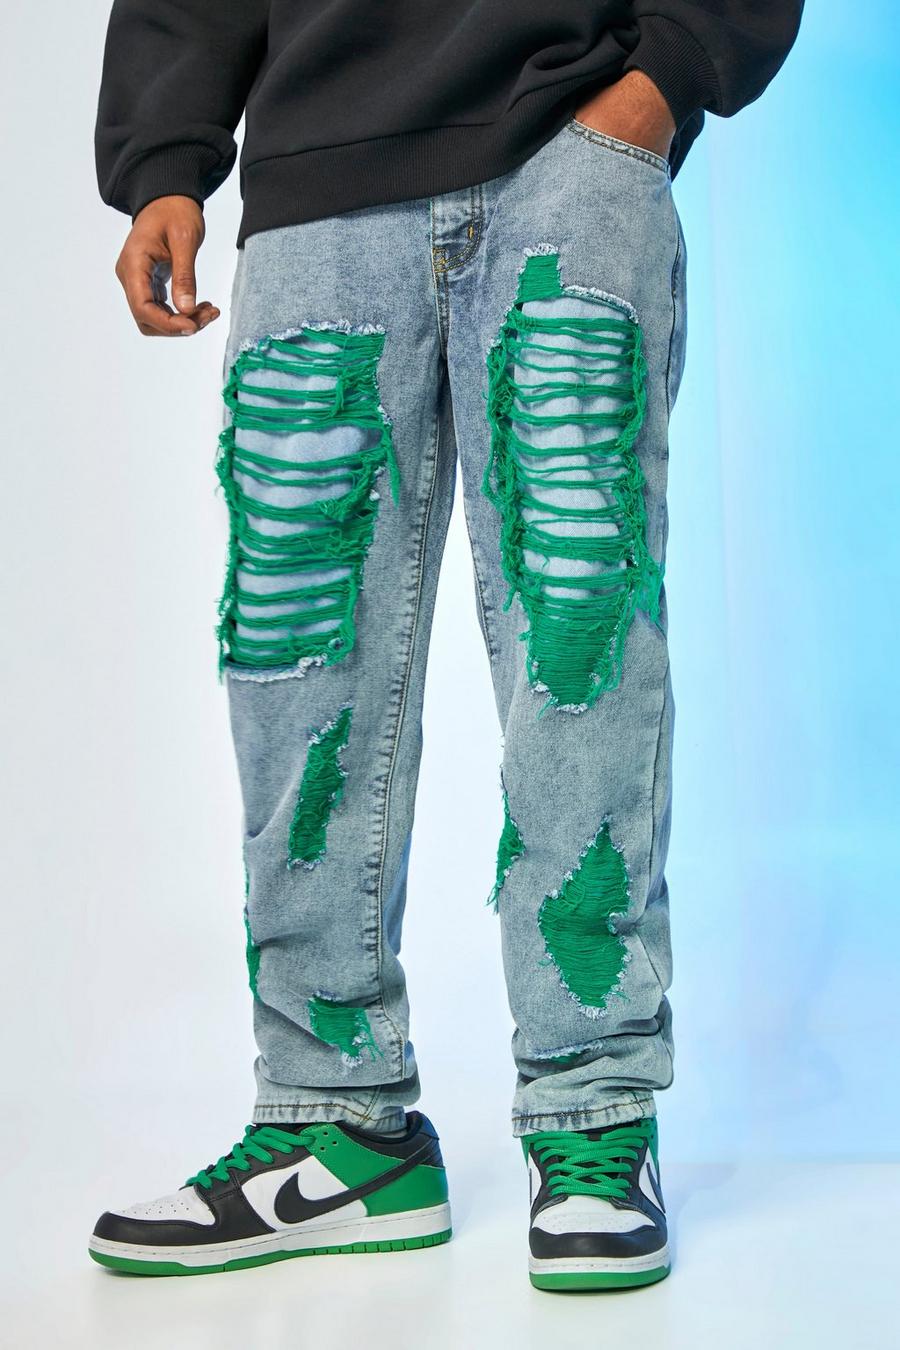 Lockere grüne Jeans mit extremen Rissen, Ice blue